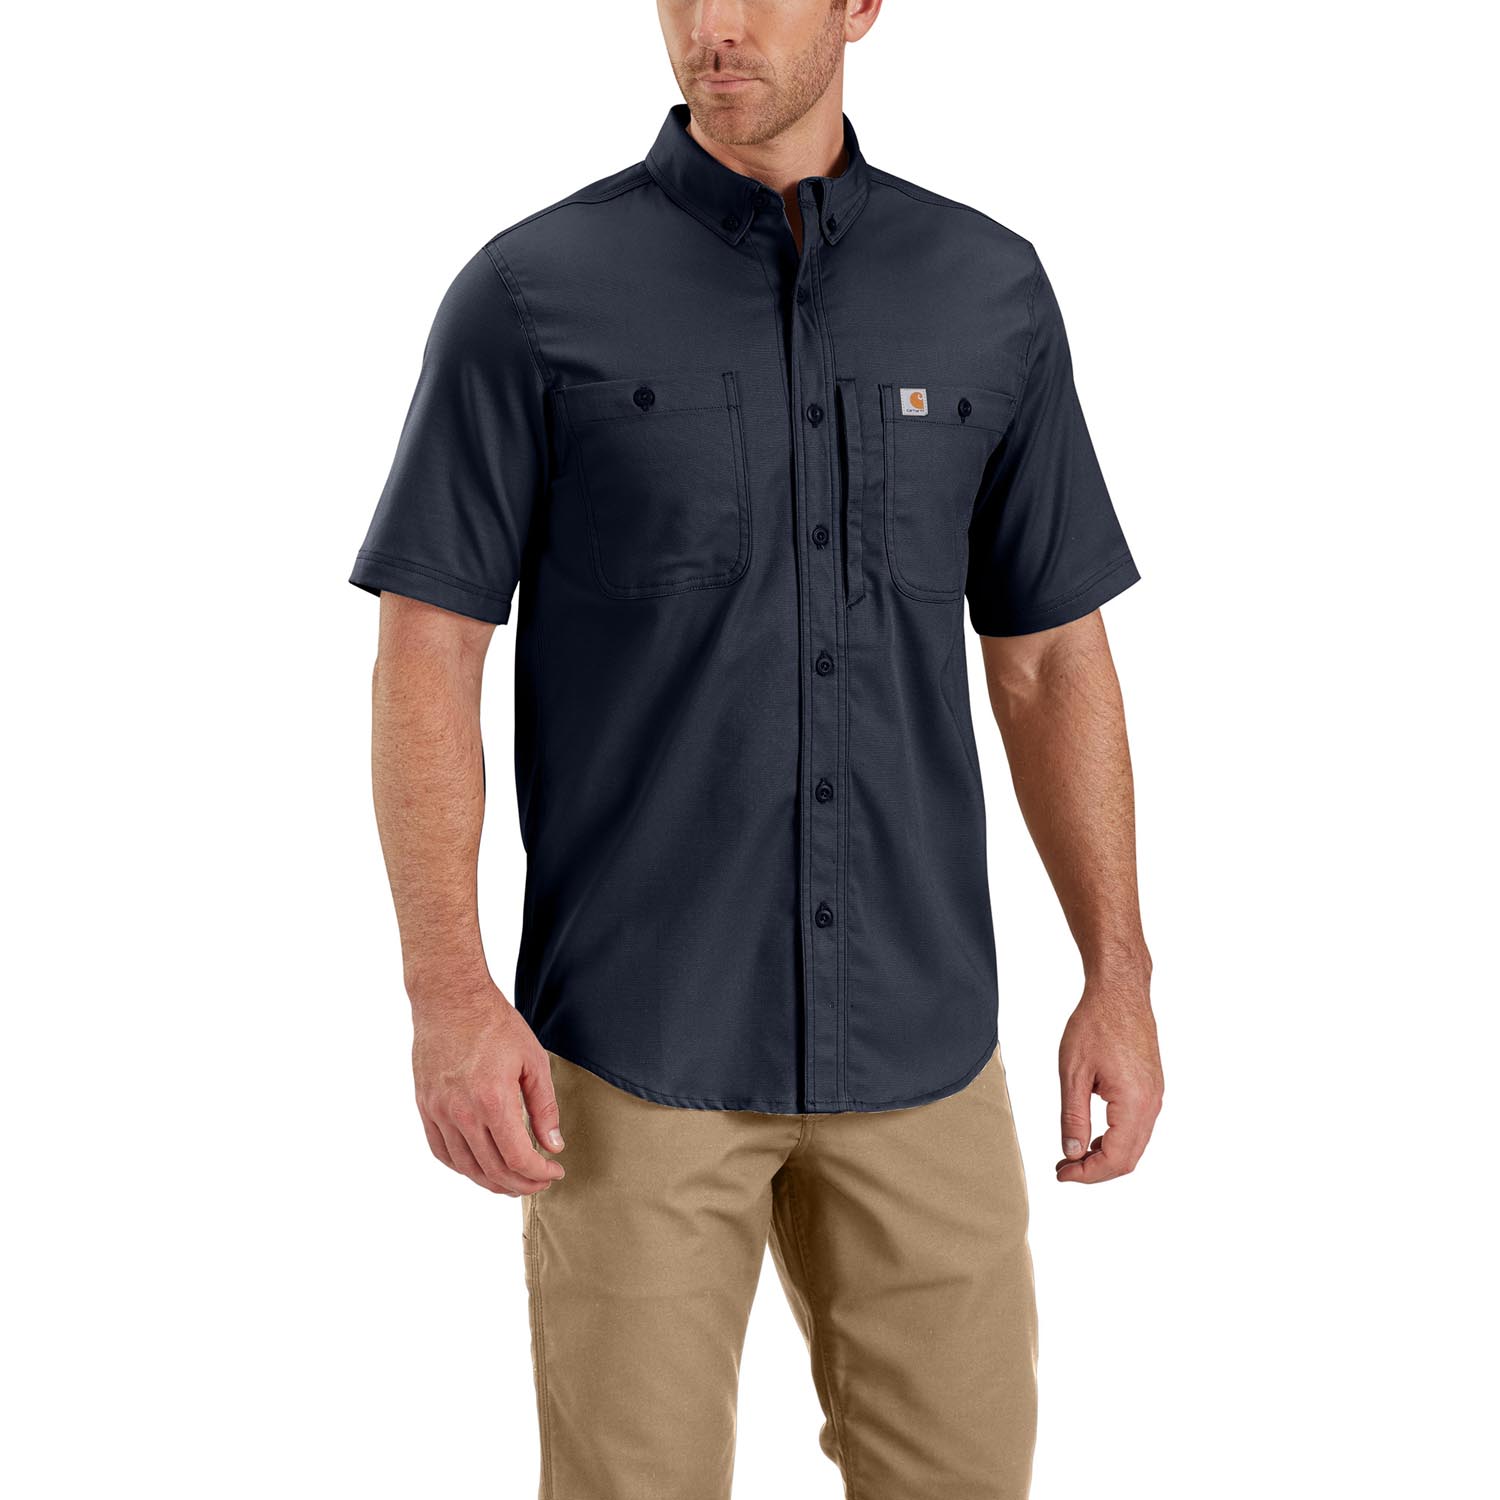 Carhartt Rugged Professional Series Men's Short Sleeve Shirt